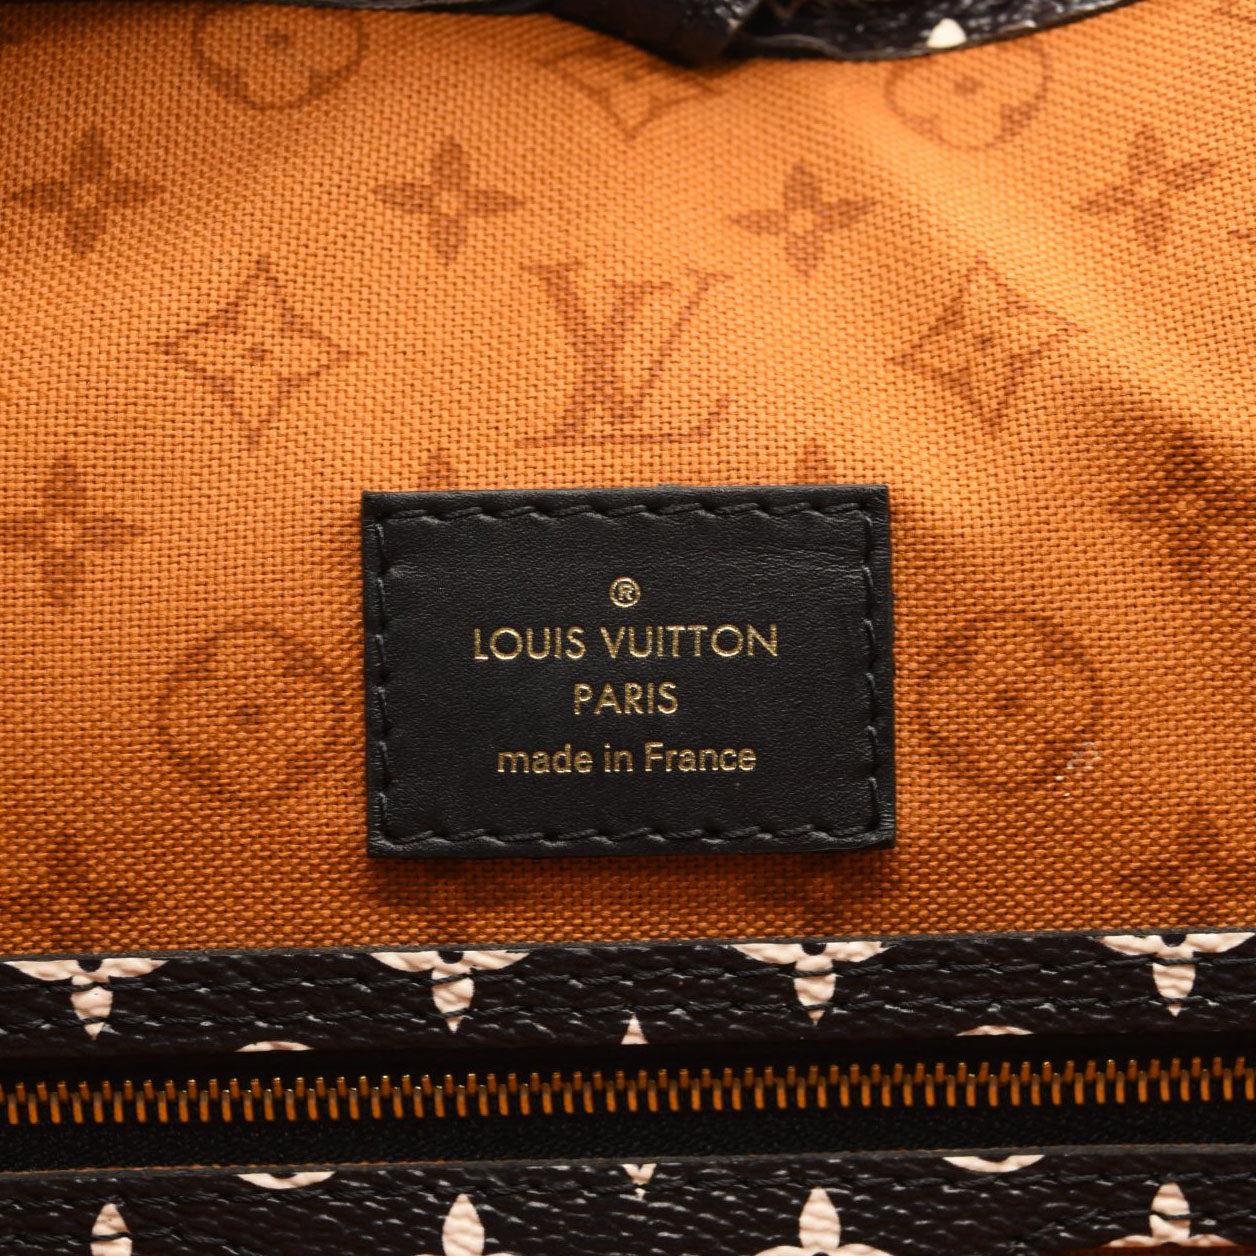 Louis Vuitton Caramel, Black, And White Giant Monogram Crafty